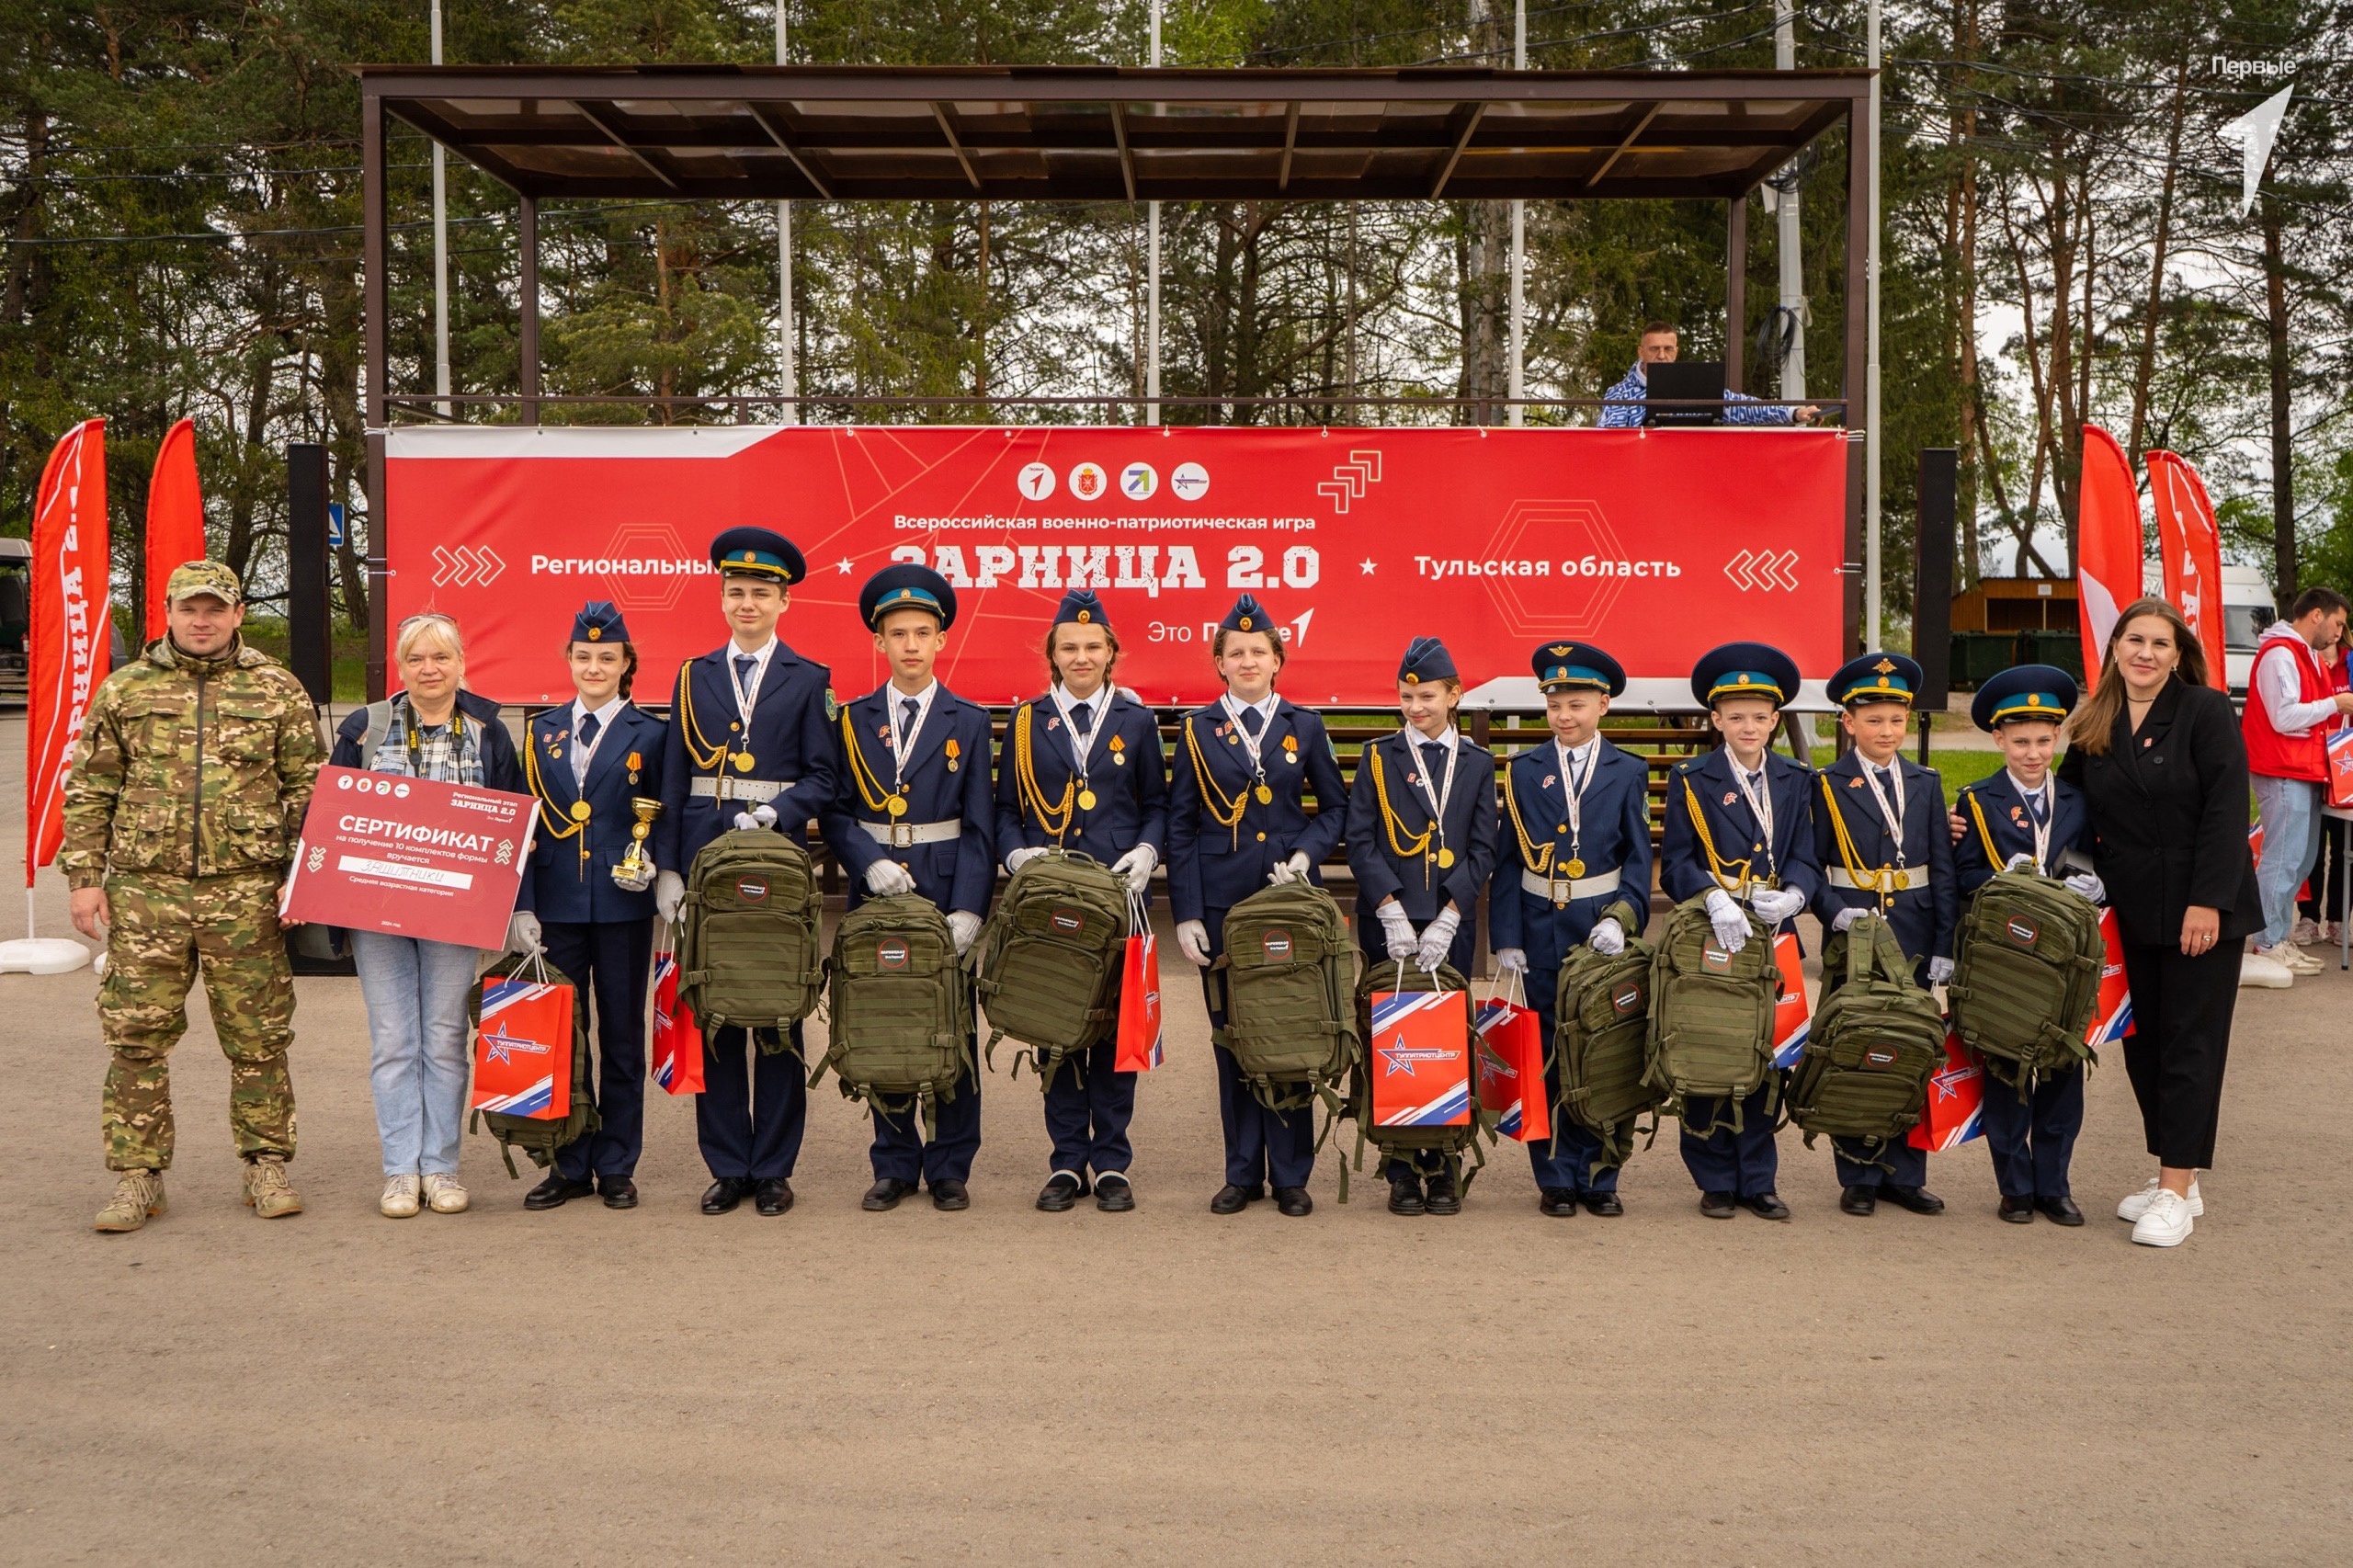 Тульские школьники стали абсолютными победителями регионального этапа «Зарницы 2.0».